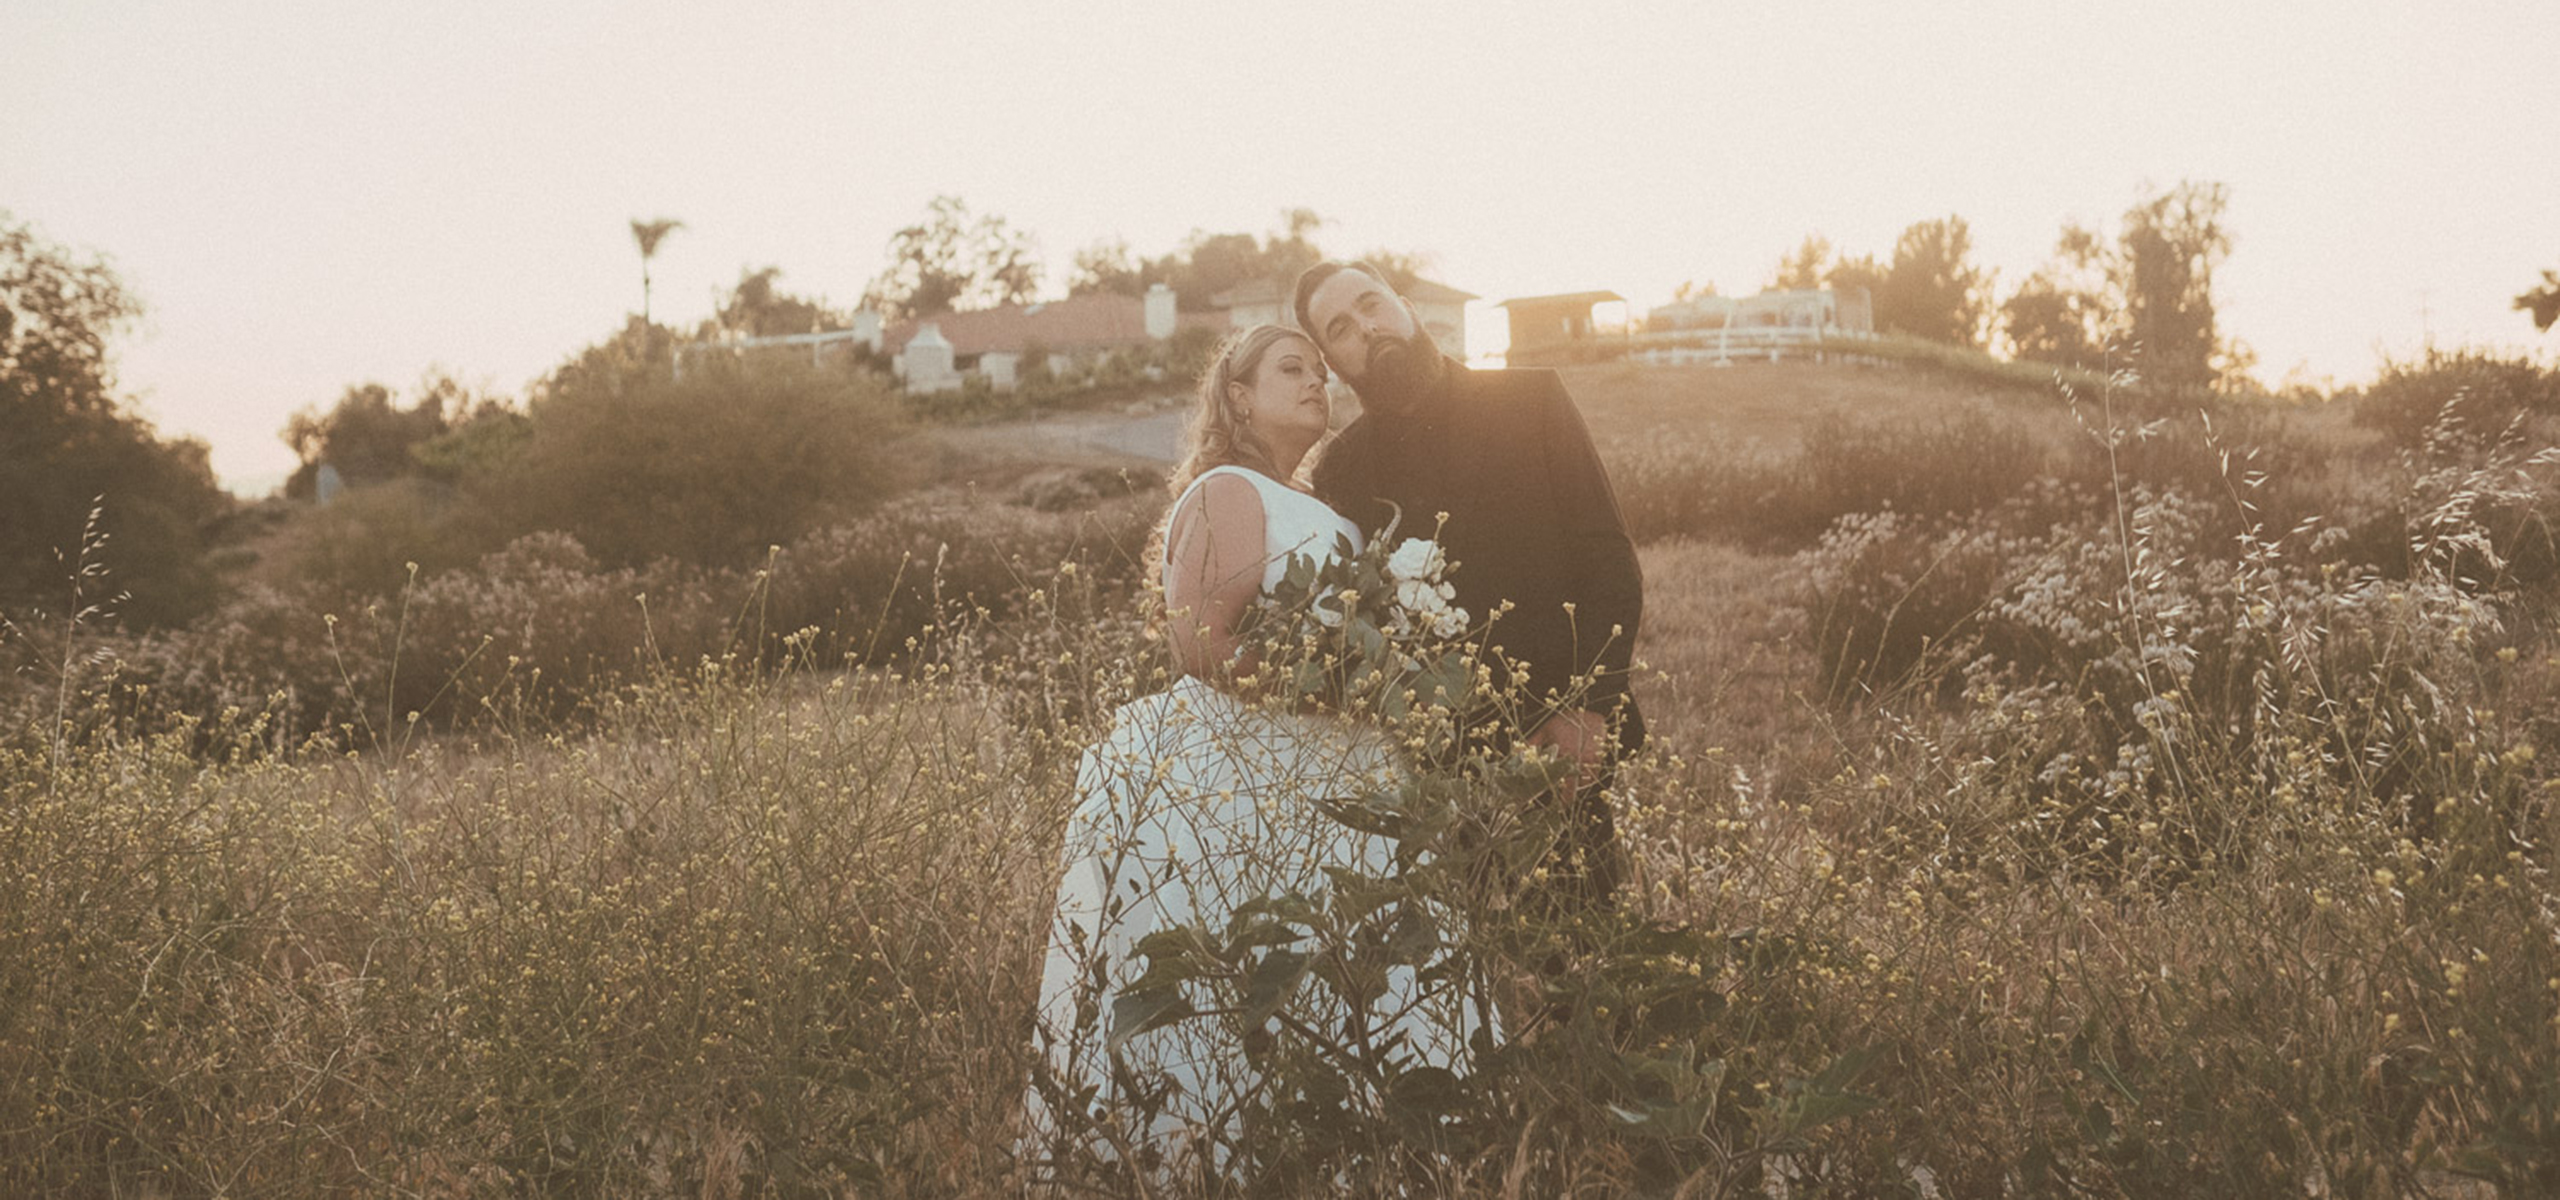 Escondido San Diego California Micro-Wedding Elopement Photography